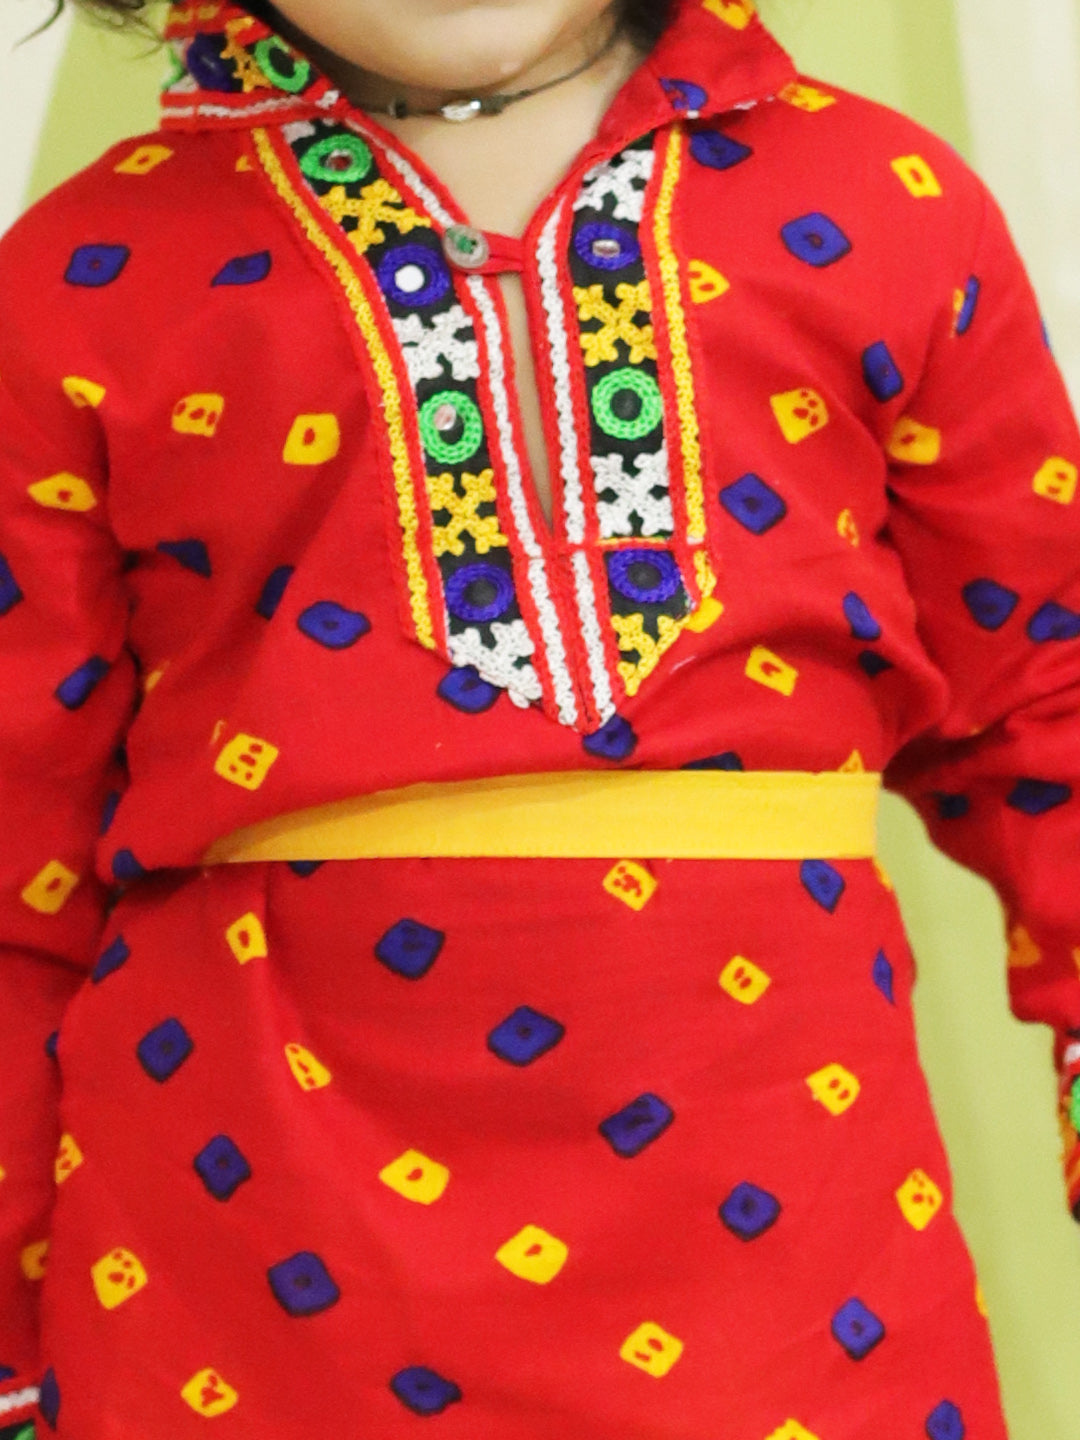 BownBee Bandhani Print Cotton Kanhaiya Suit Dress with Bansuri, Mukut Belt- Red